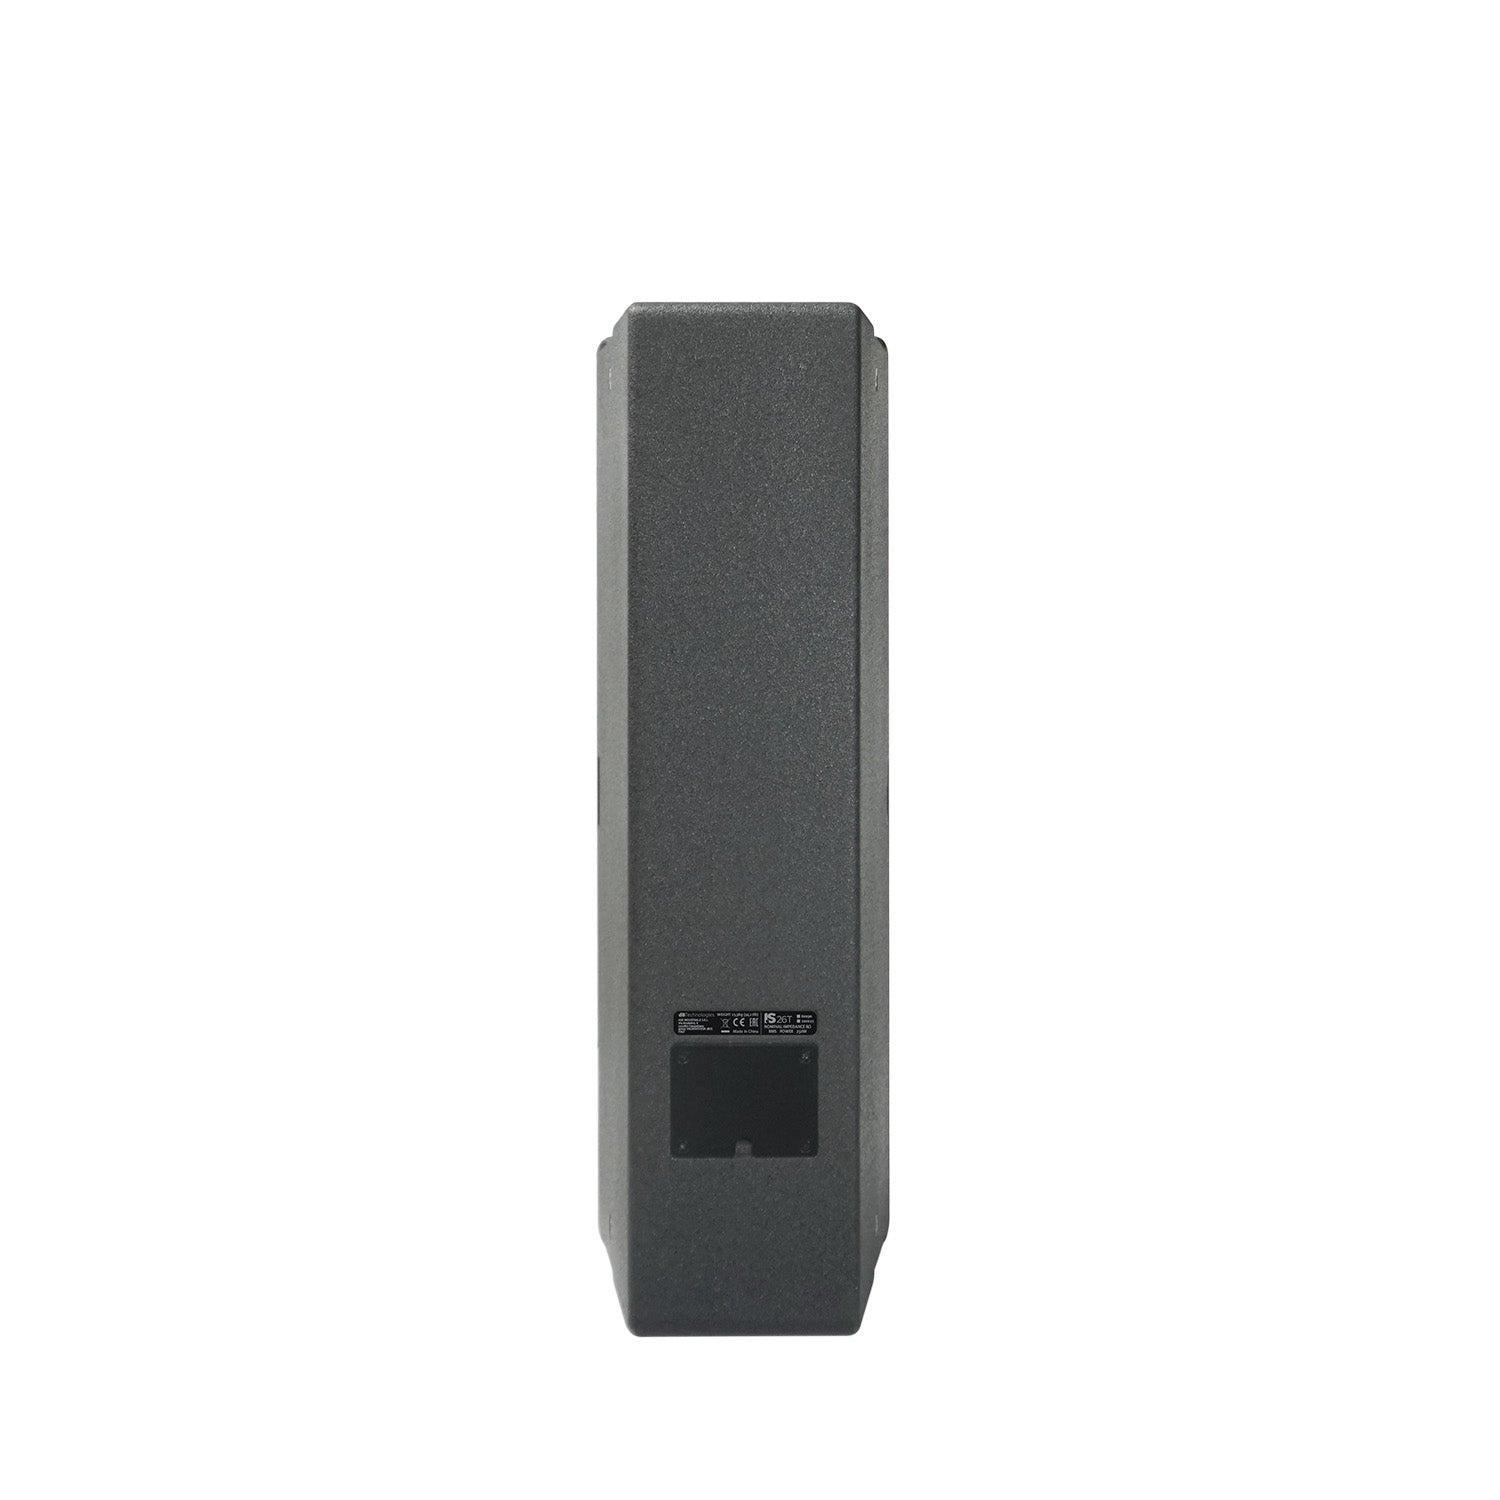 dB Technologies IS 26TB, 2x6.5" Passive 2-Way Speaker 250W - Black - Hollywood DJ